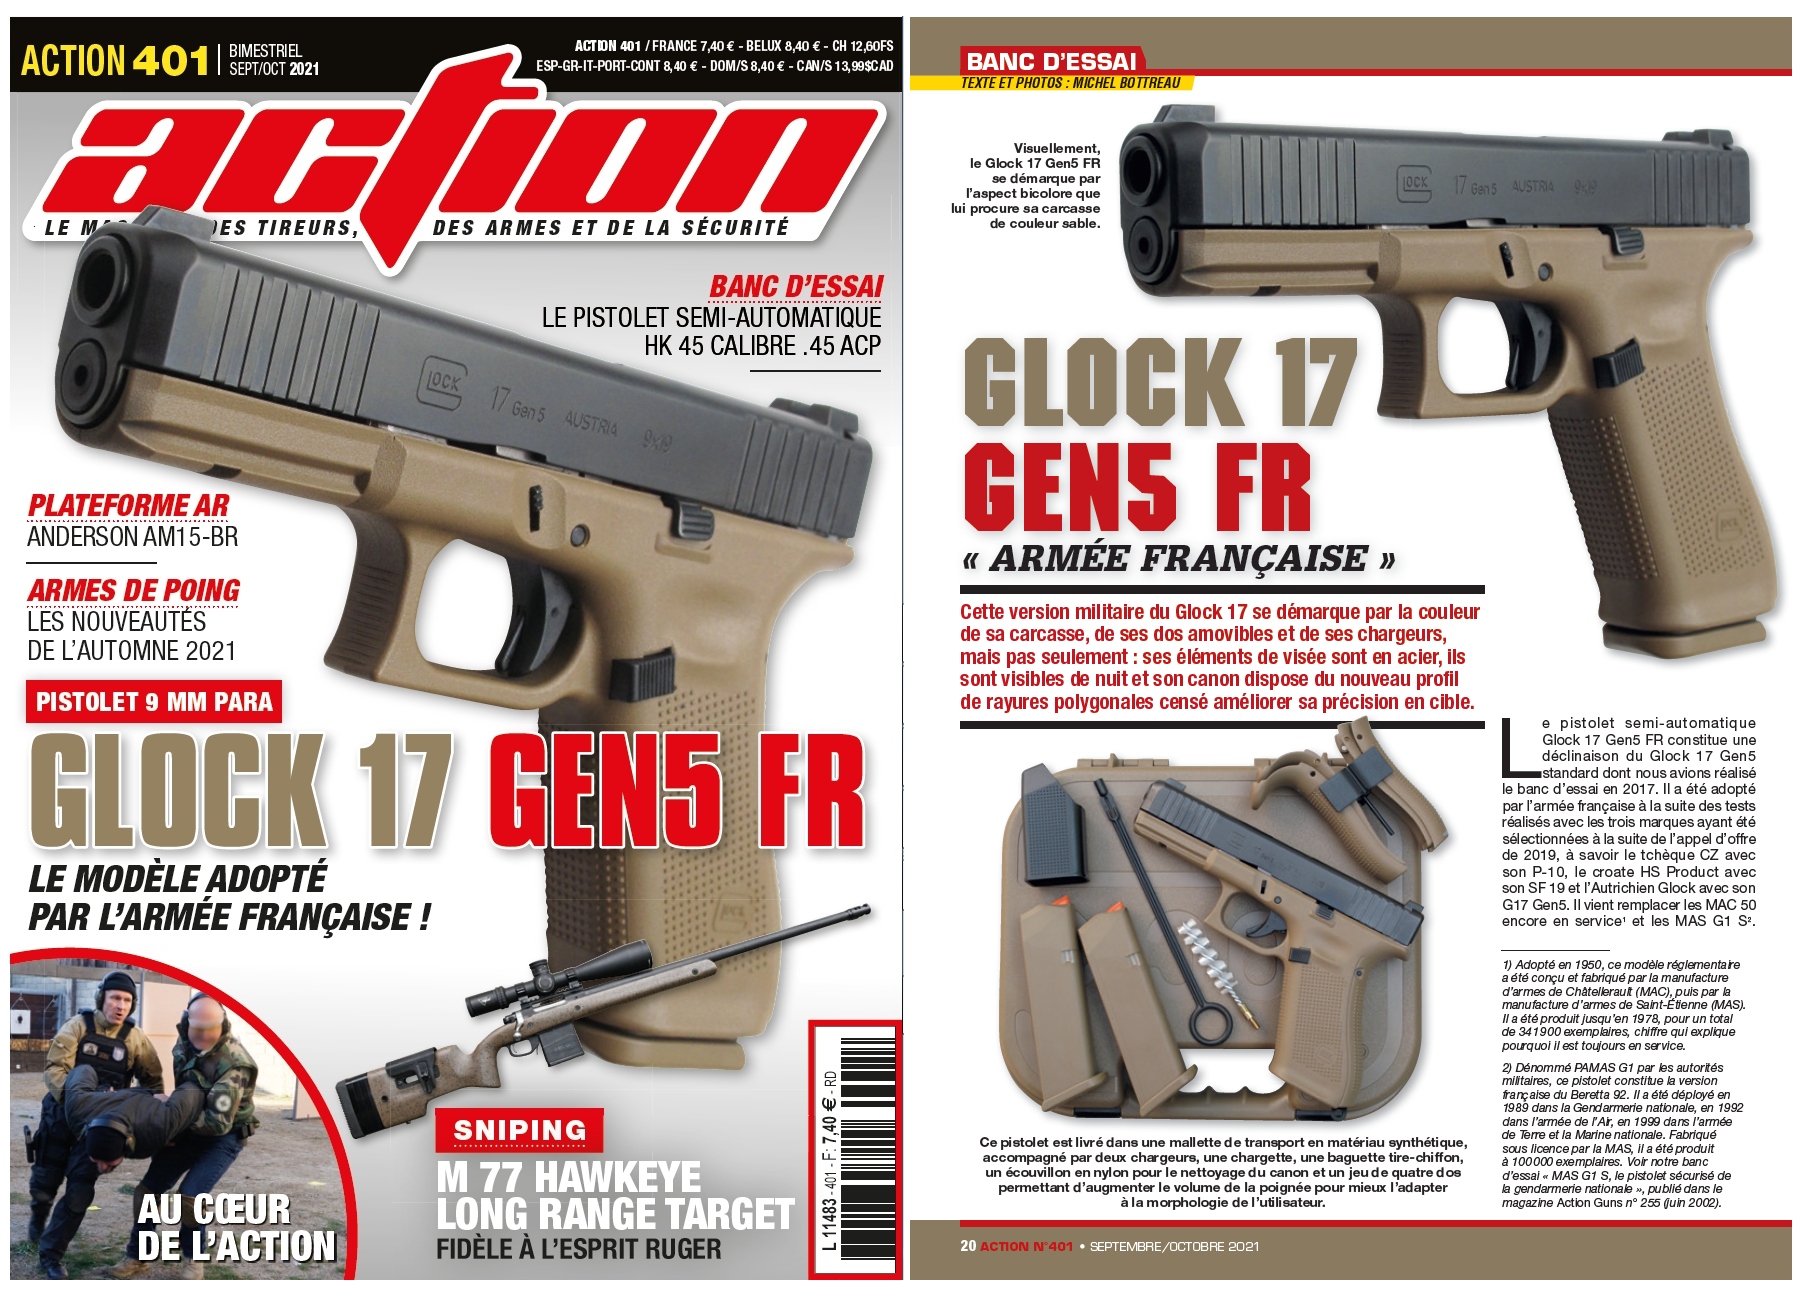 Le banc d’essai du pistolet Glock 17 Gen5 FR a été publié sur 6 pages dans le magazine Action n°401 (septembre/octobre 2021).